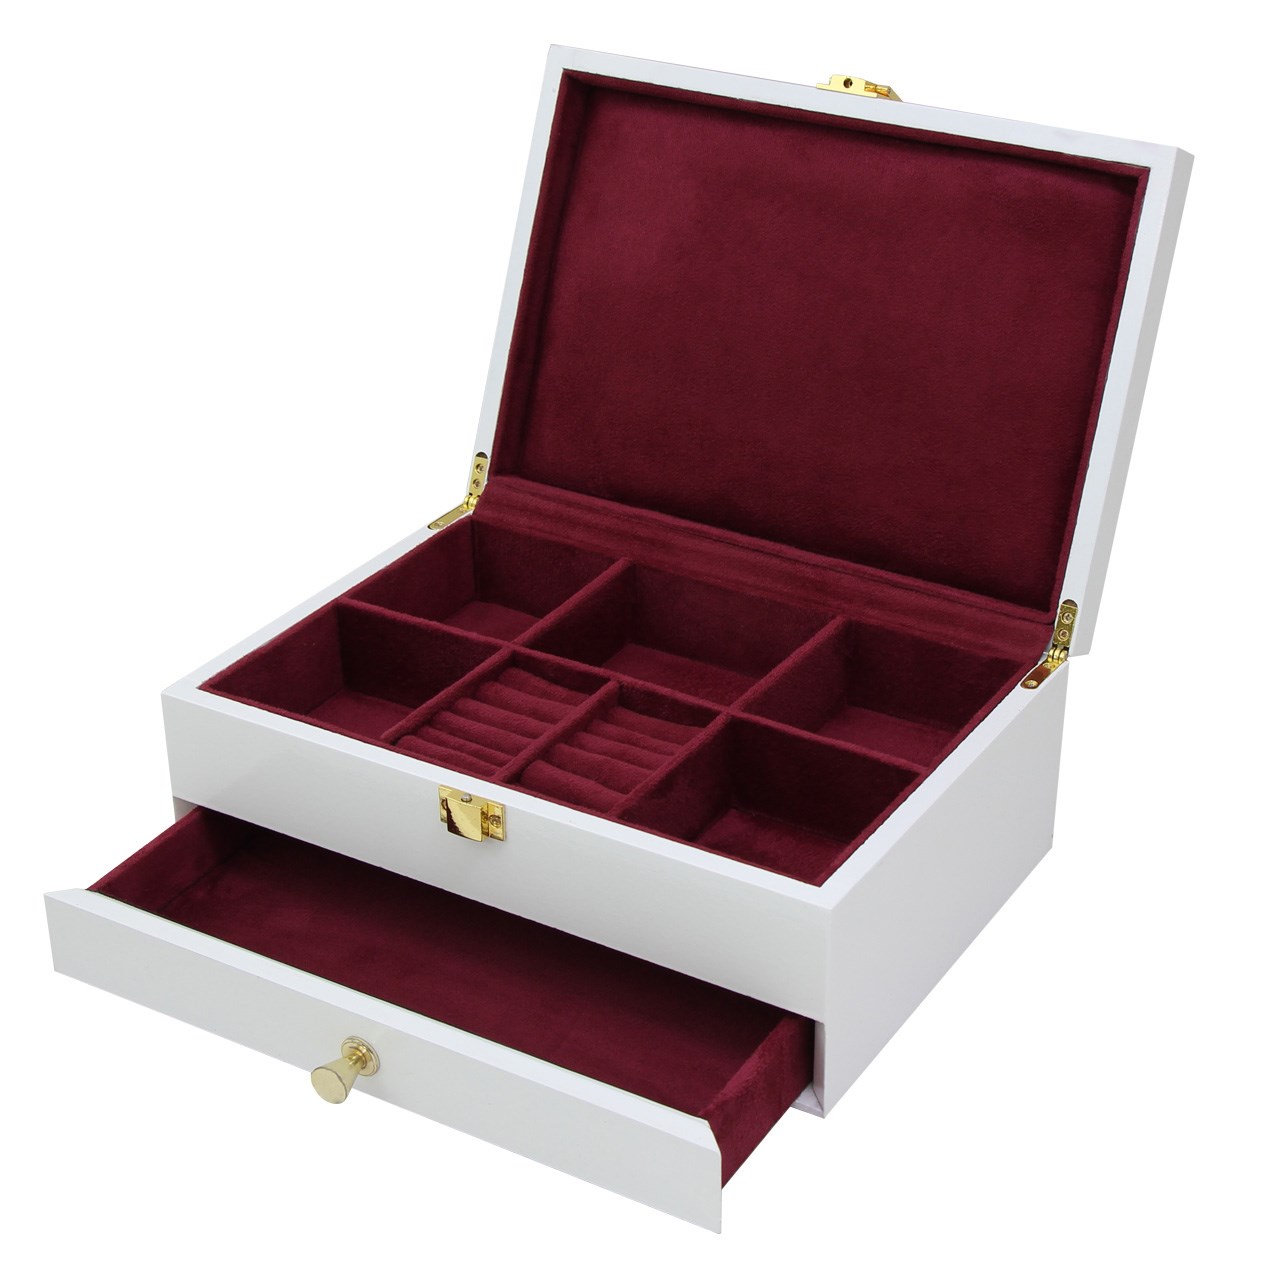 جعبه جواهرات باکسیشو مدل J110 سایز کوچک